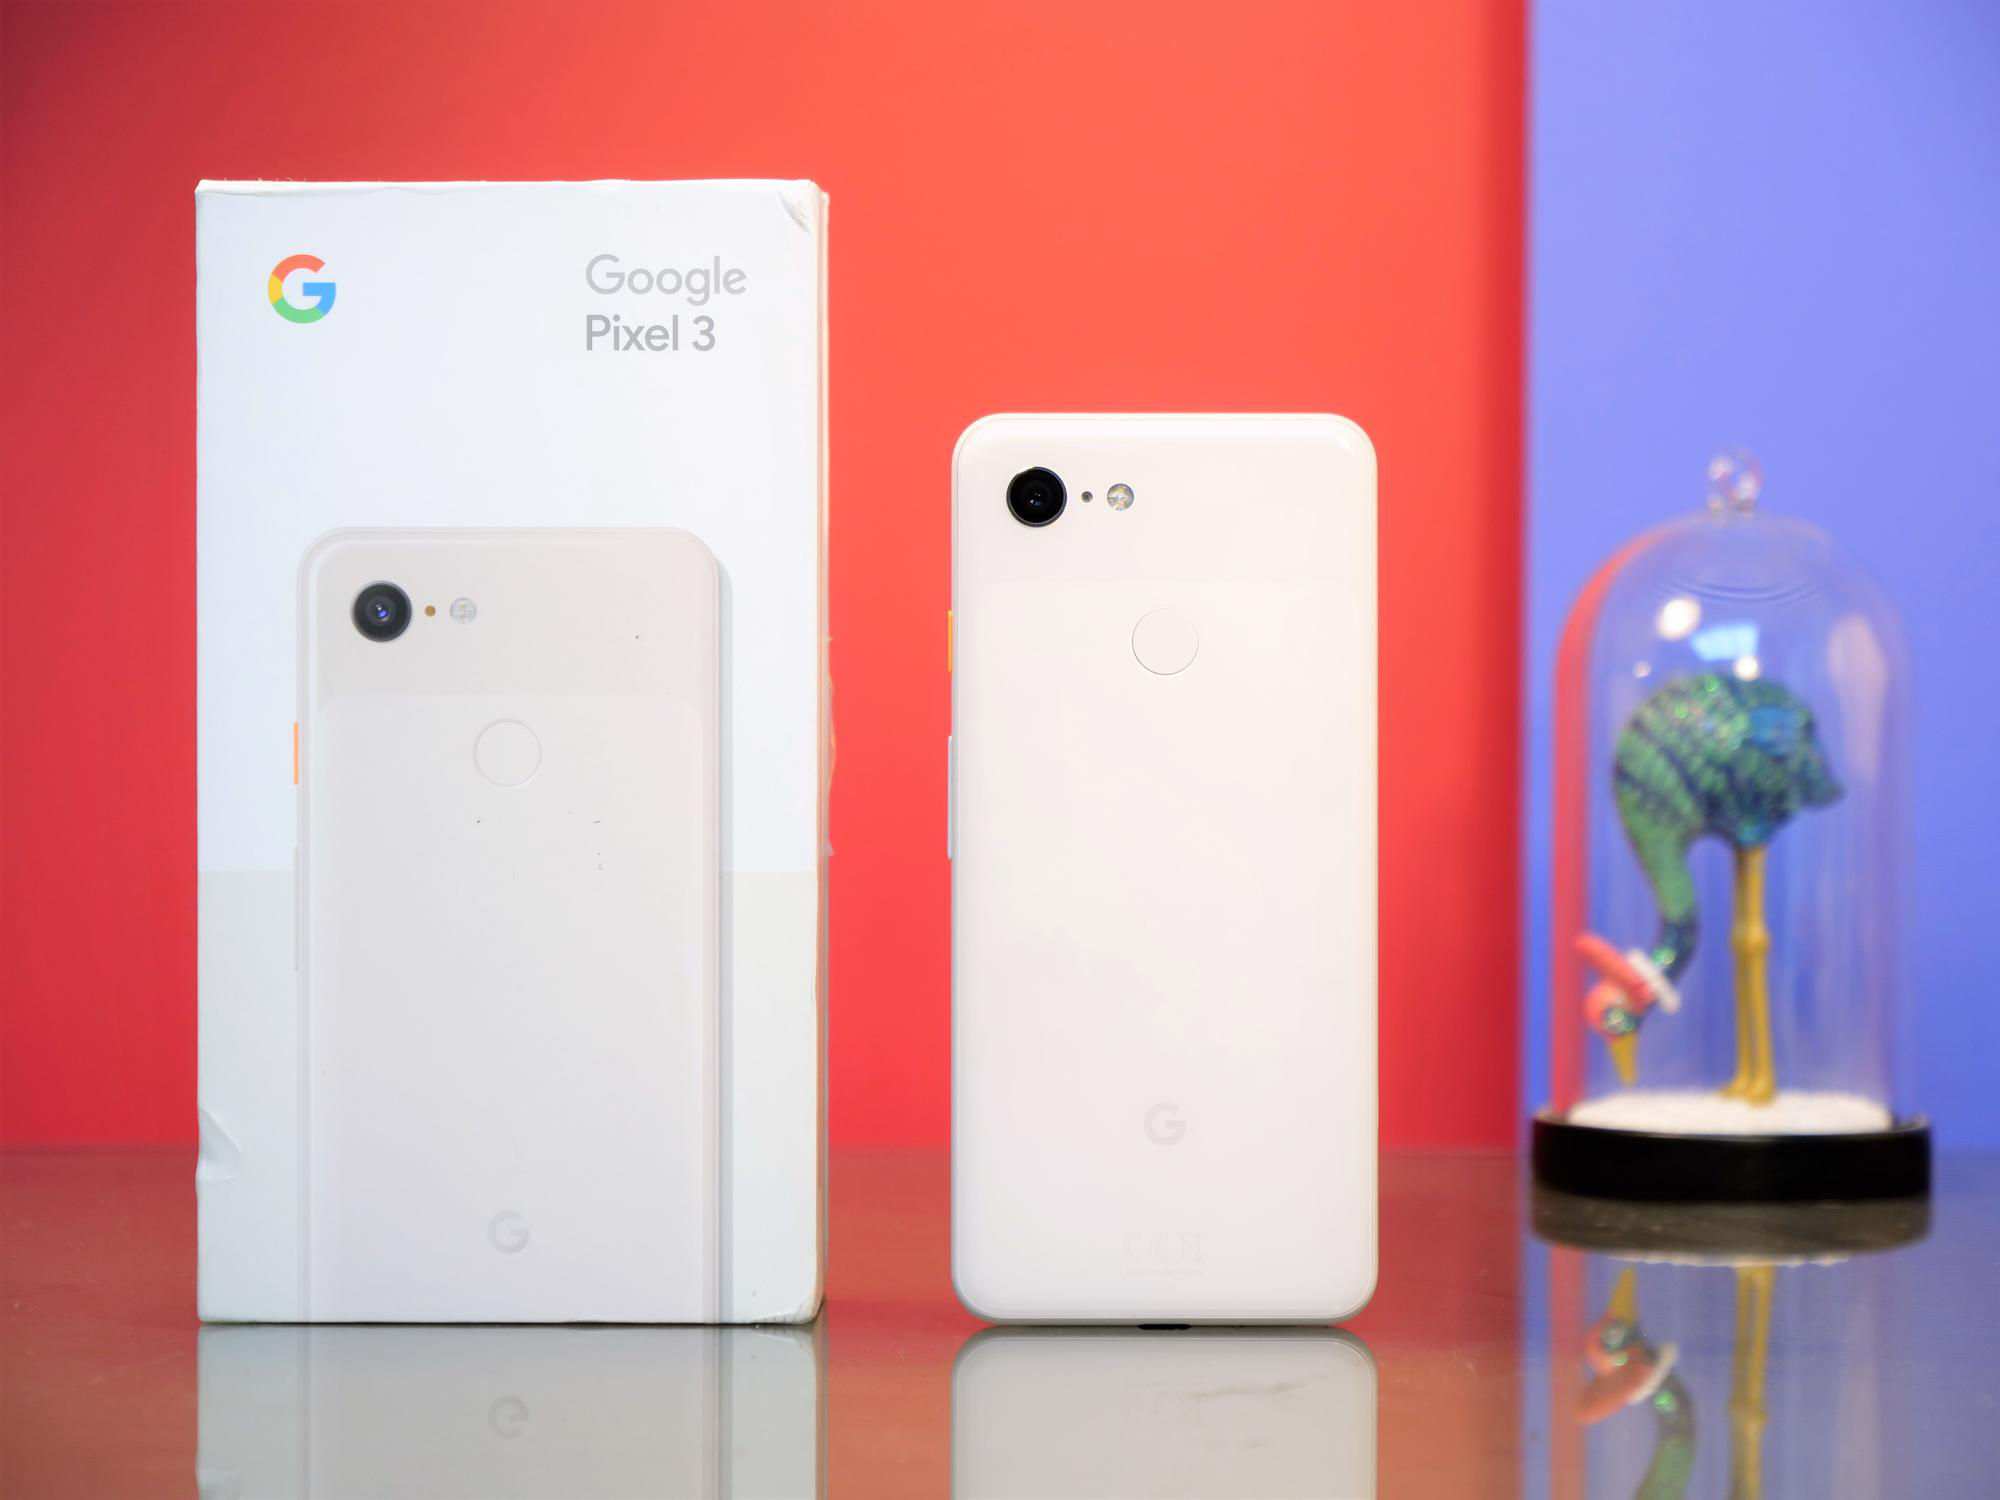 Google obniżył cenę Pixel 3, w przeddzień ogłoszenia Pixel 4 i Pixel 4 XL